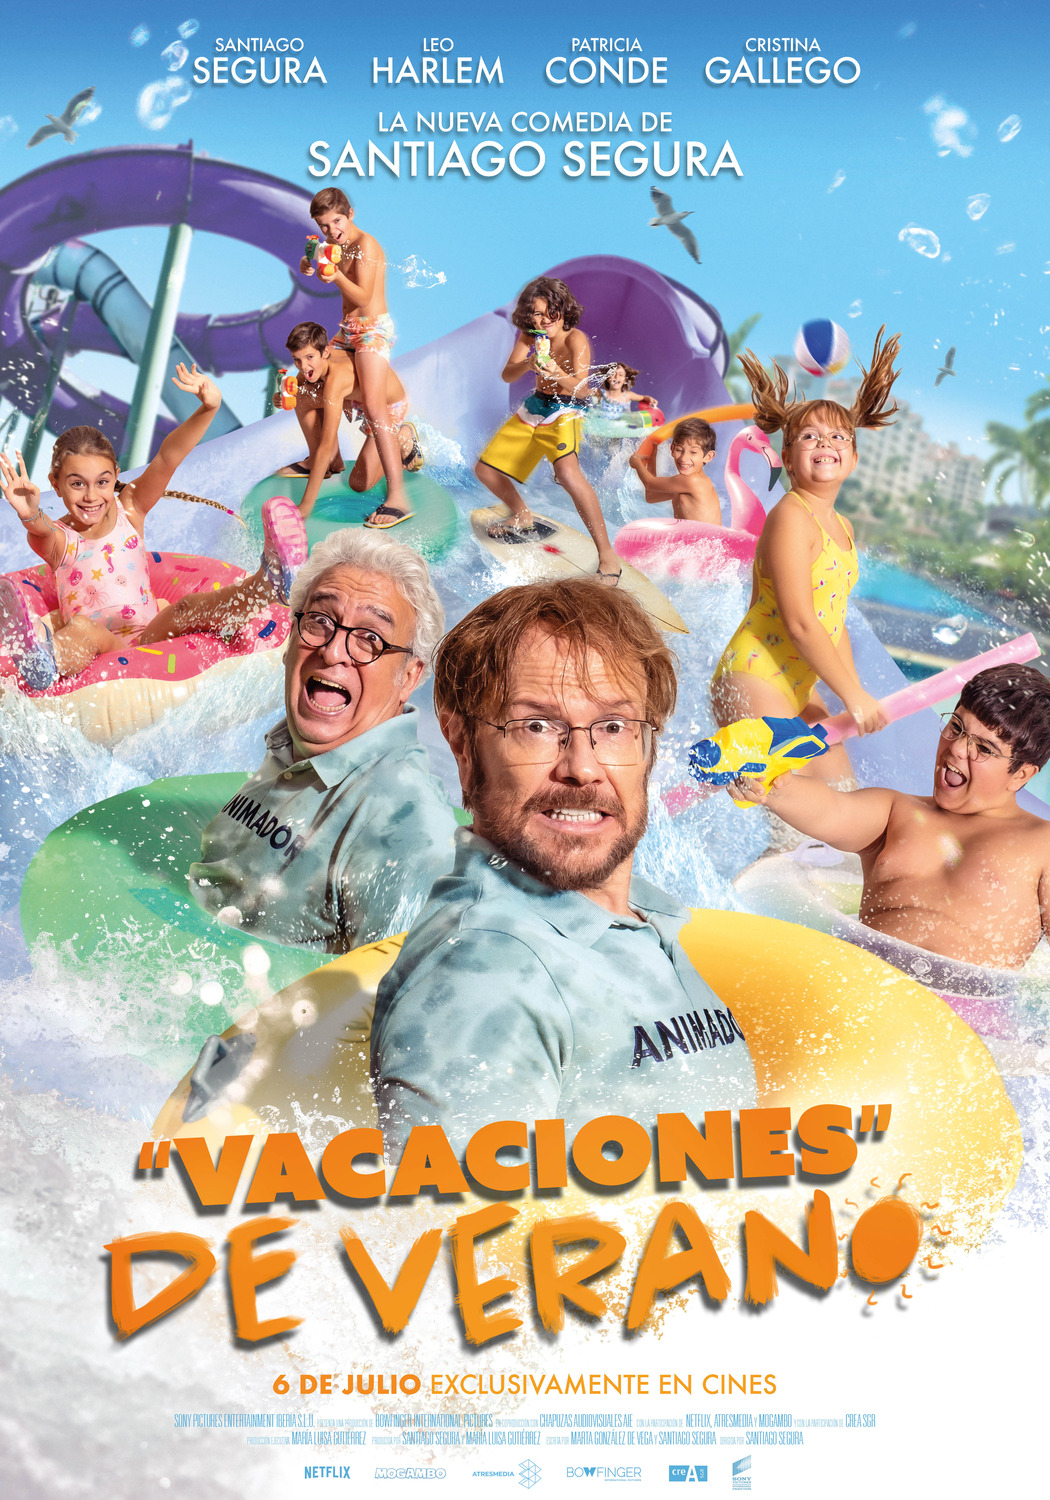 Extra Large Movie Poster Image for Vacaciones de verano (#2 of 2)